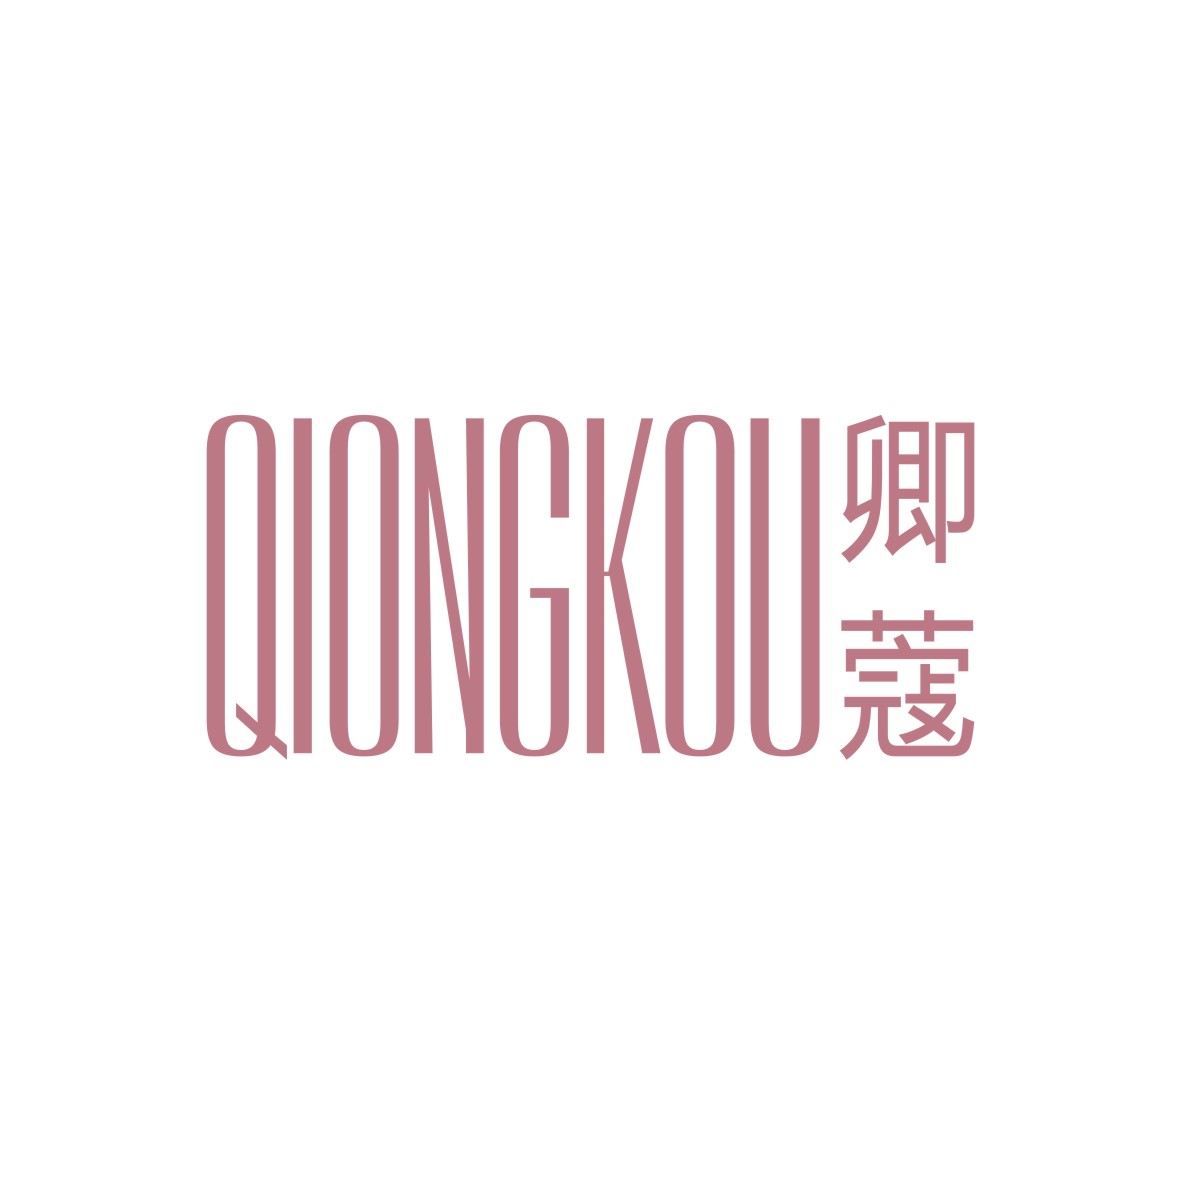 广州品翰文化发展有限公司商标卿蔻 QIONGKOU（18类）多少钱？